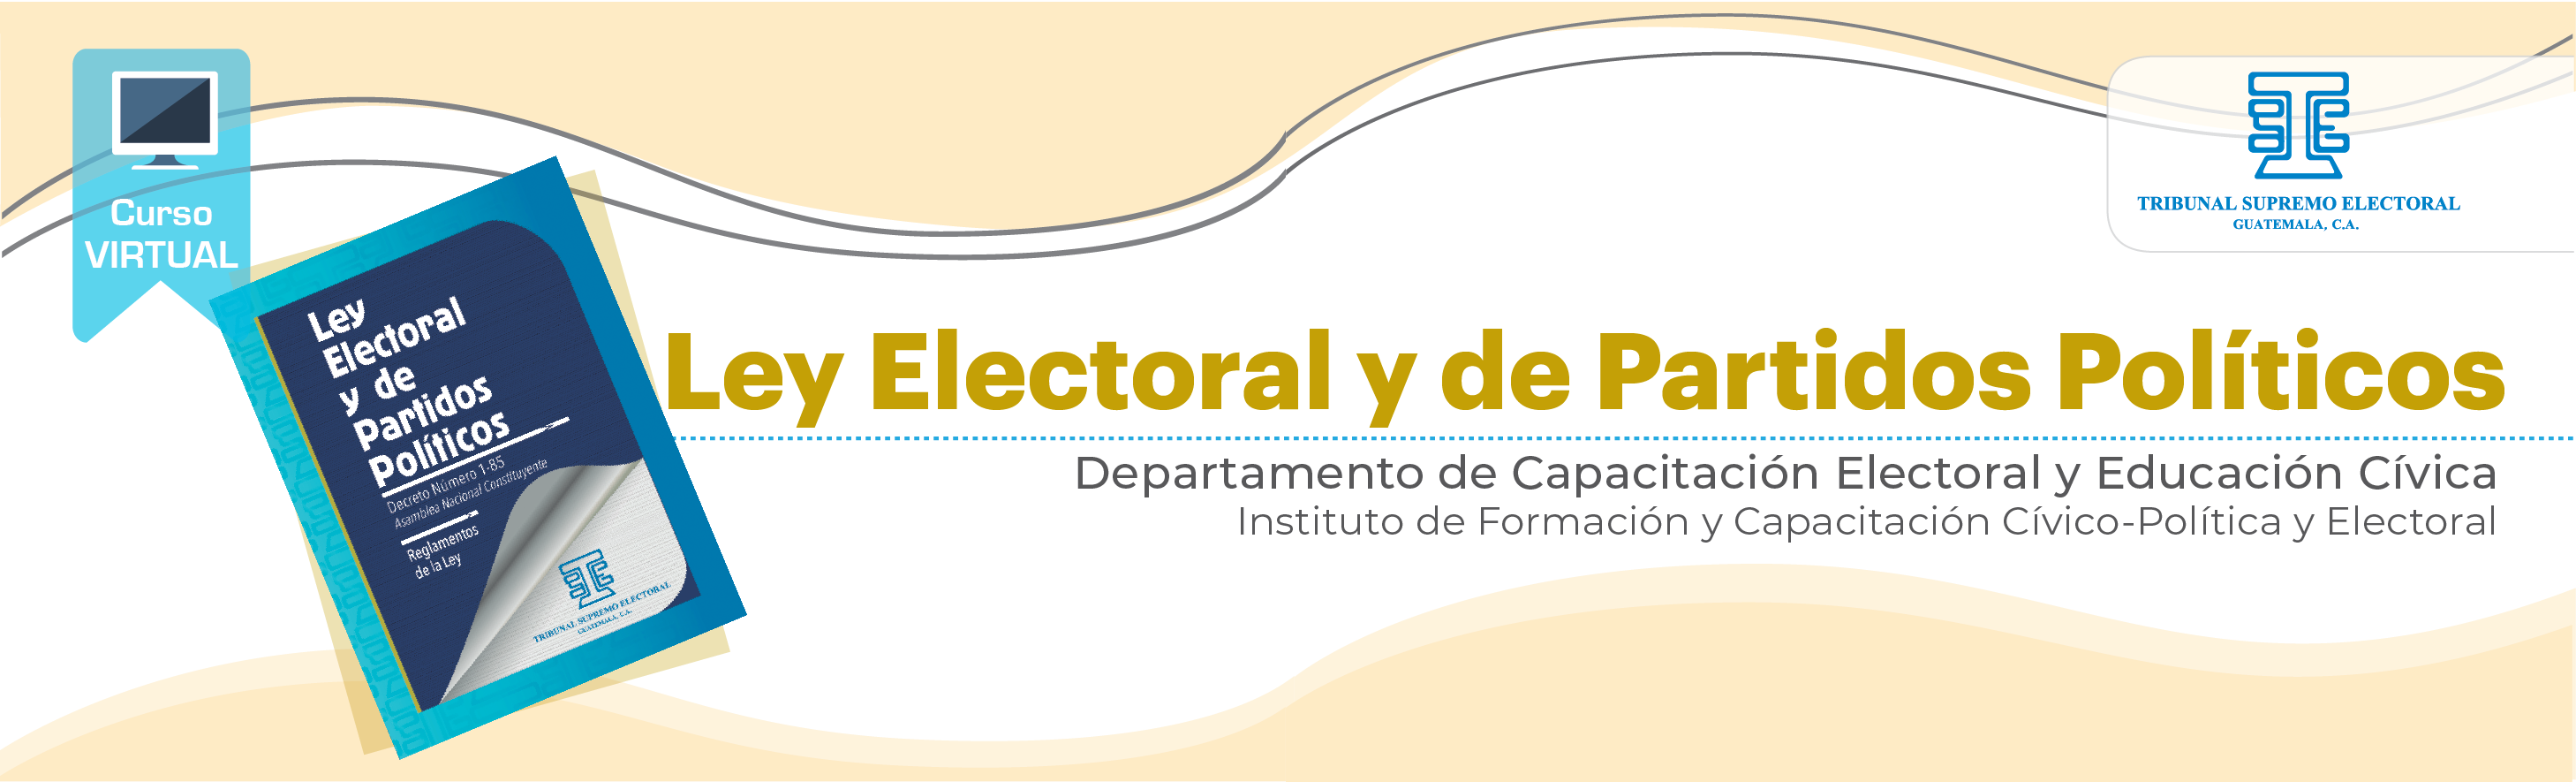 Ley Electoral y de Partidos Políticos 2022 I